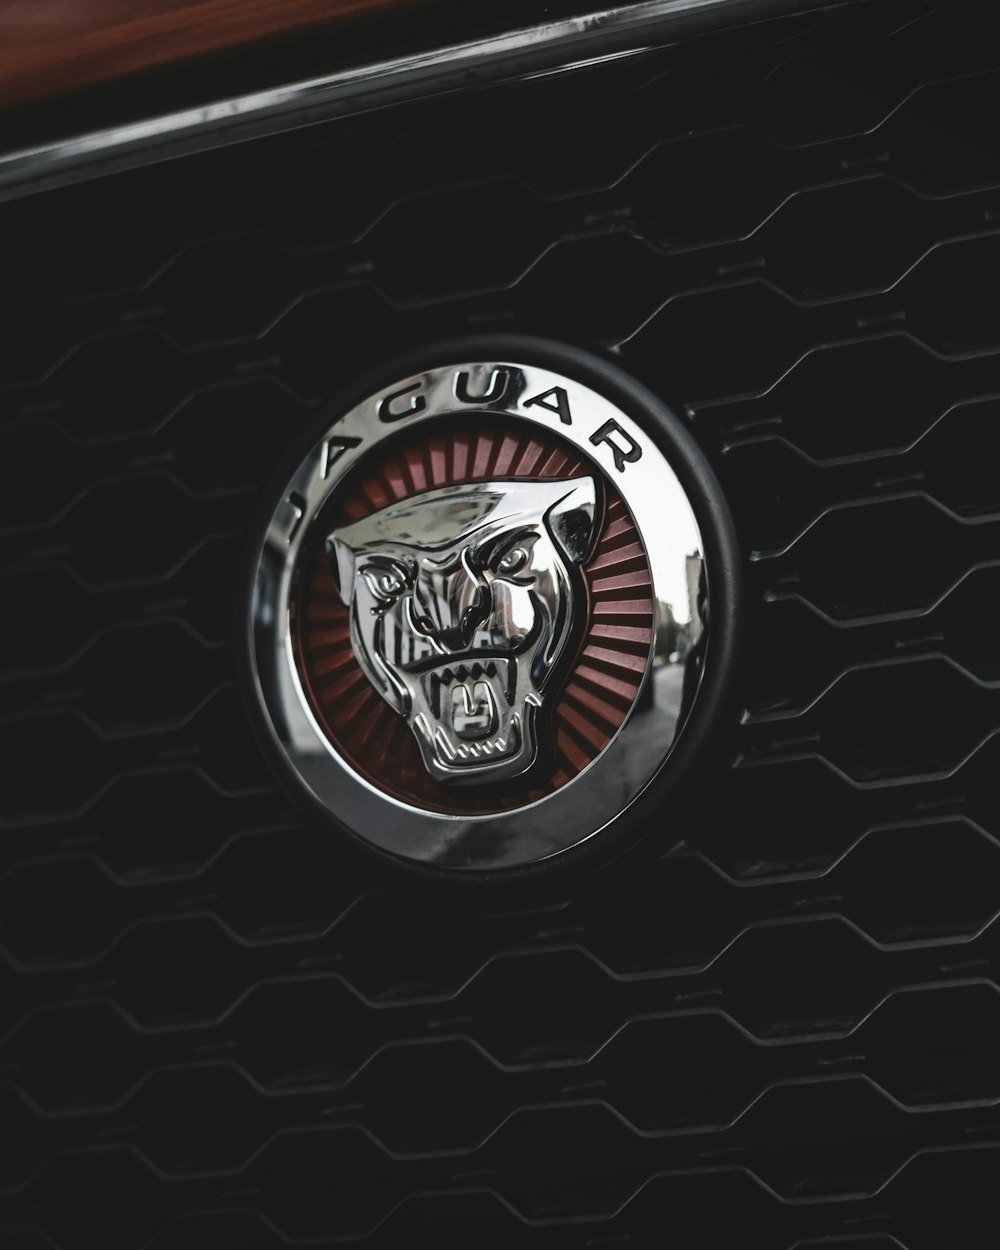 fotografia de foco seletivo do emblema da Jaguar